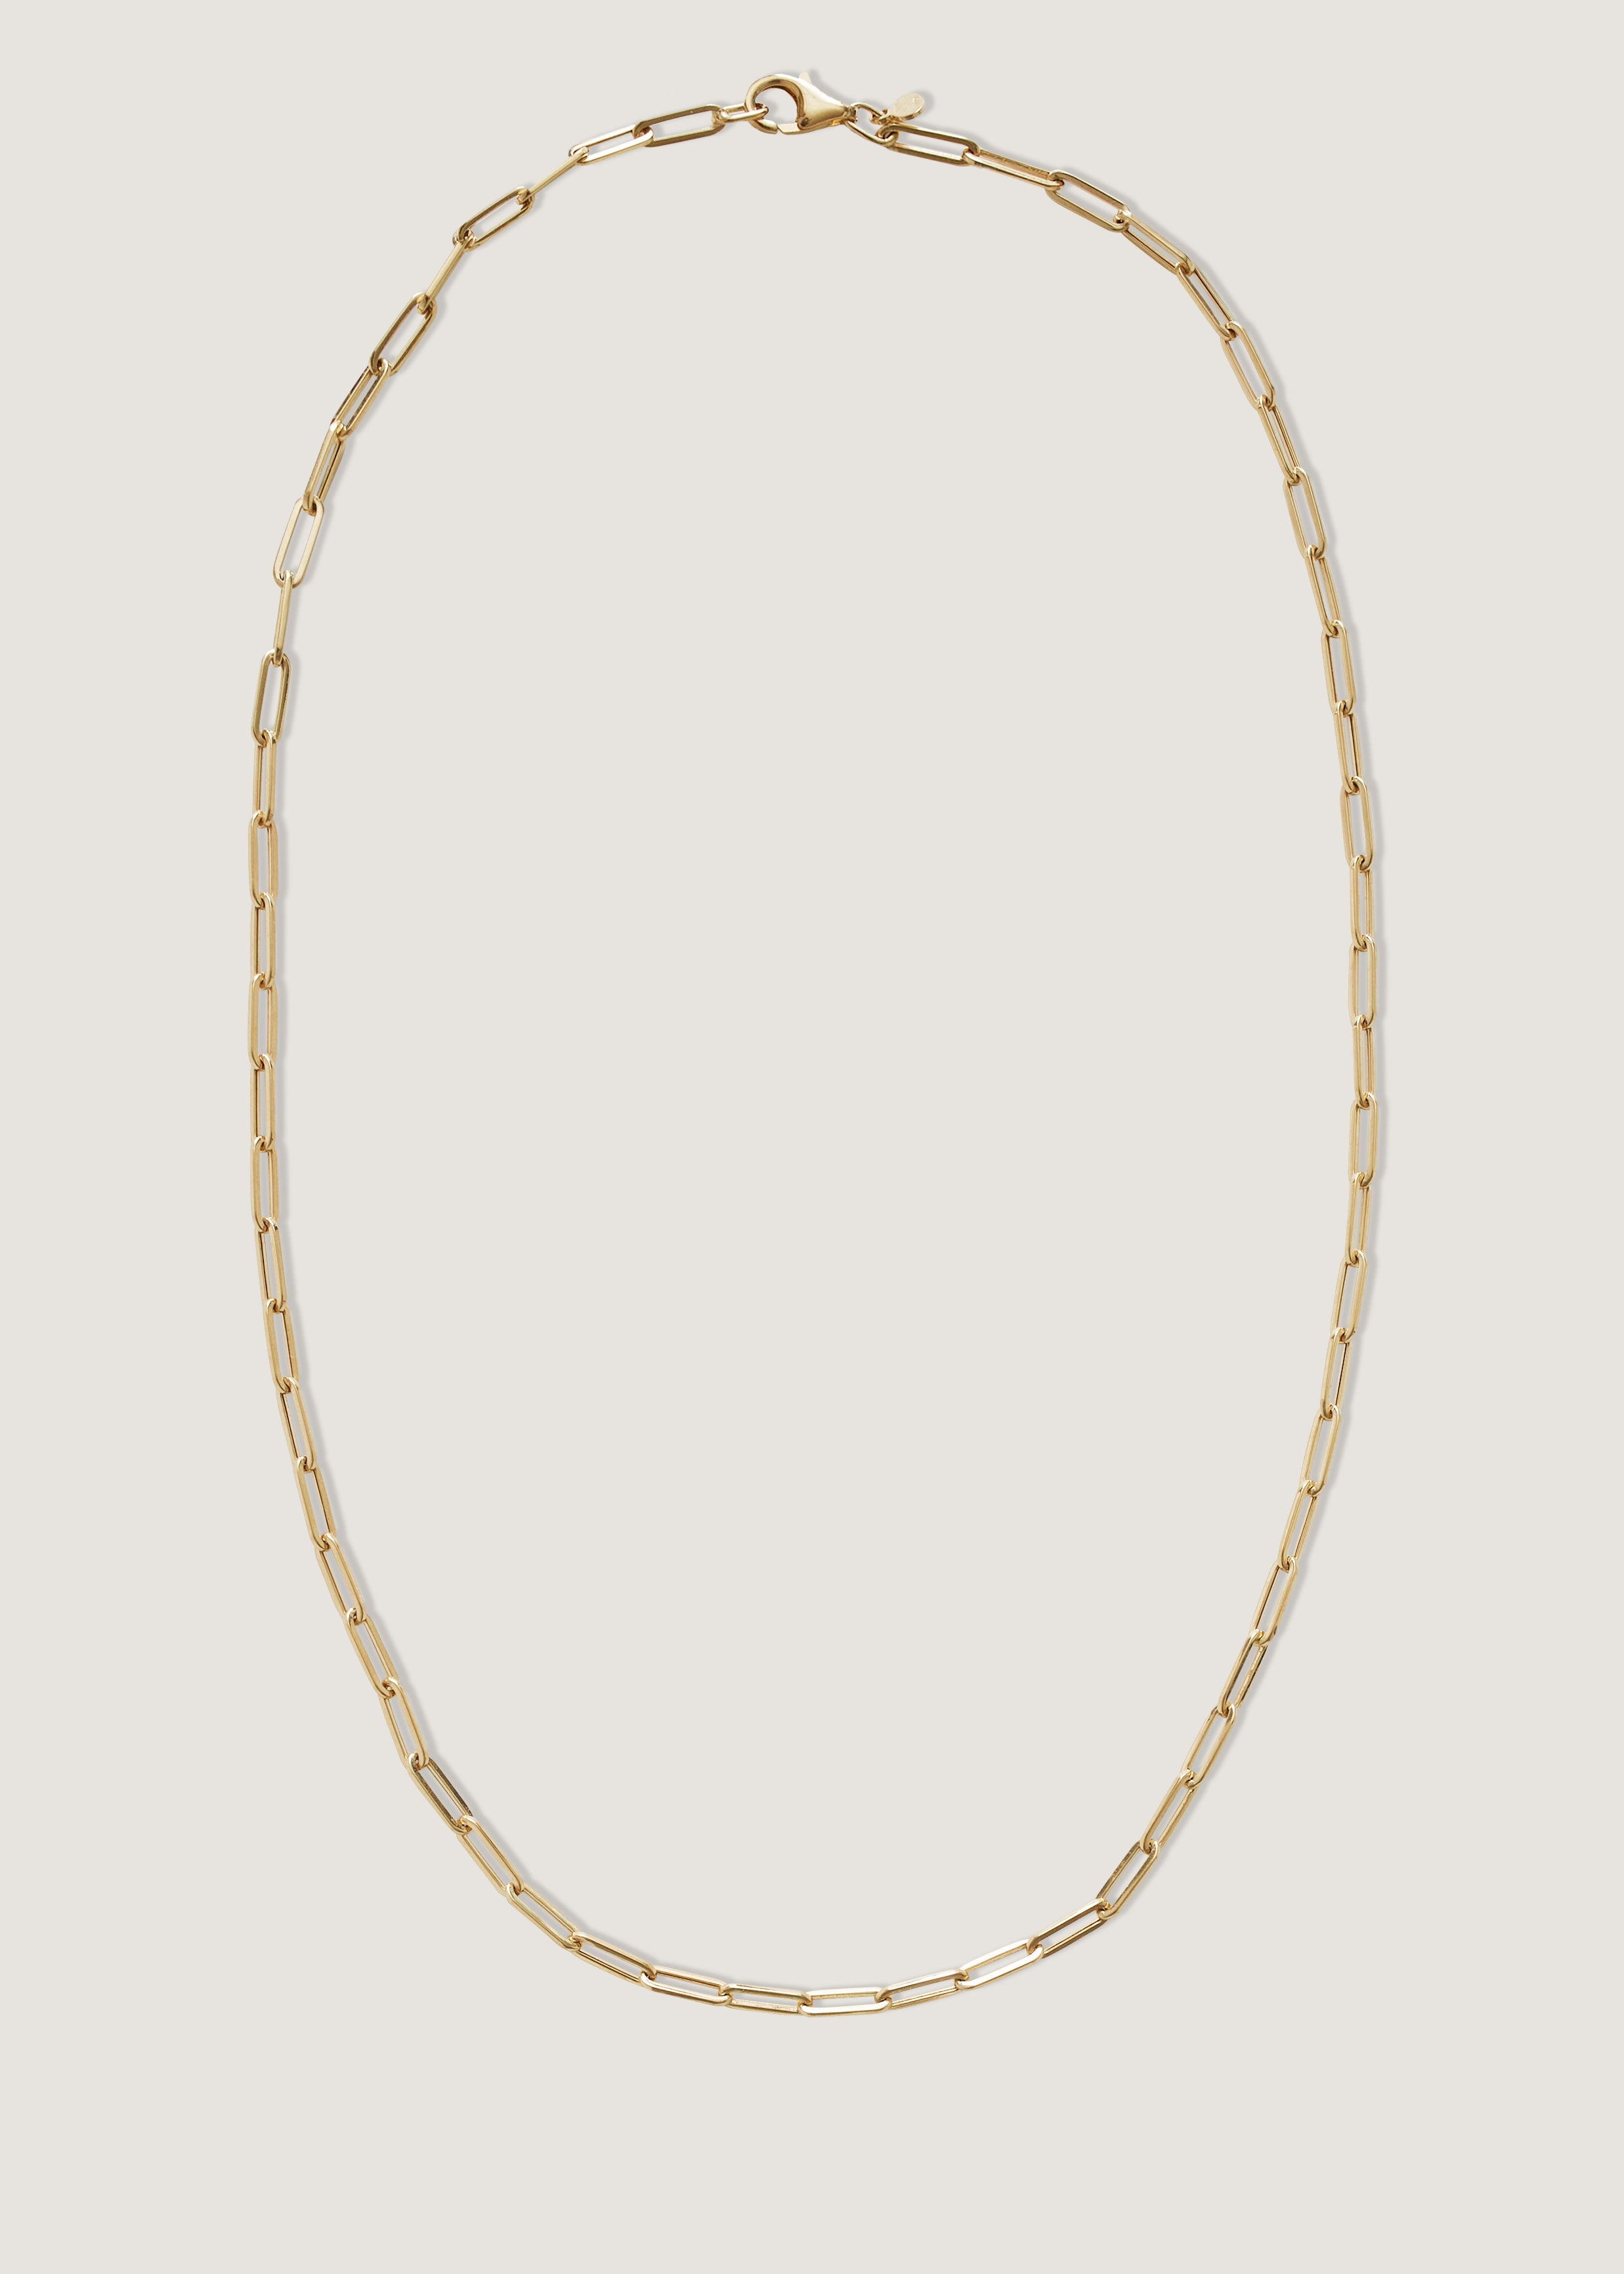 alt="Petite Link Chain Necklace"